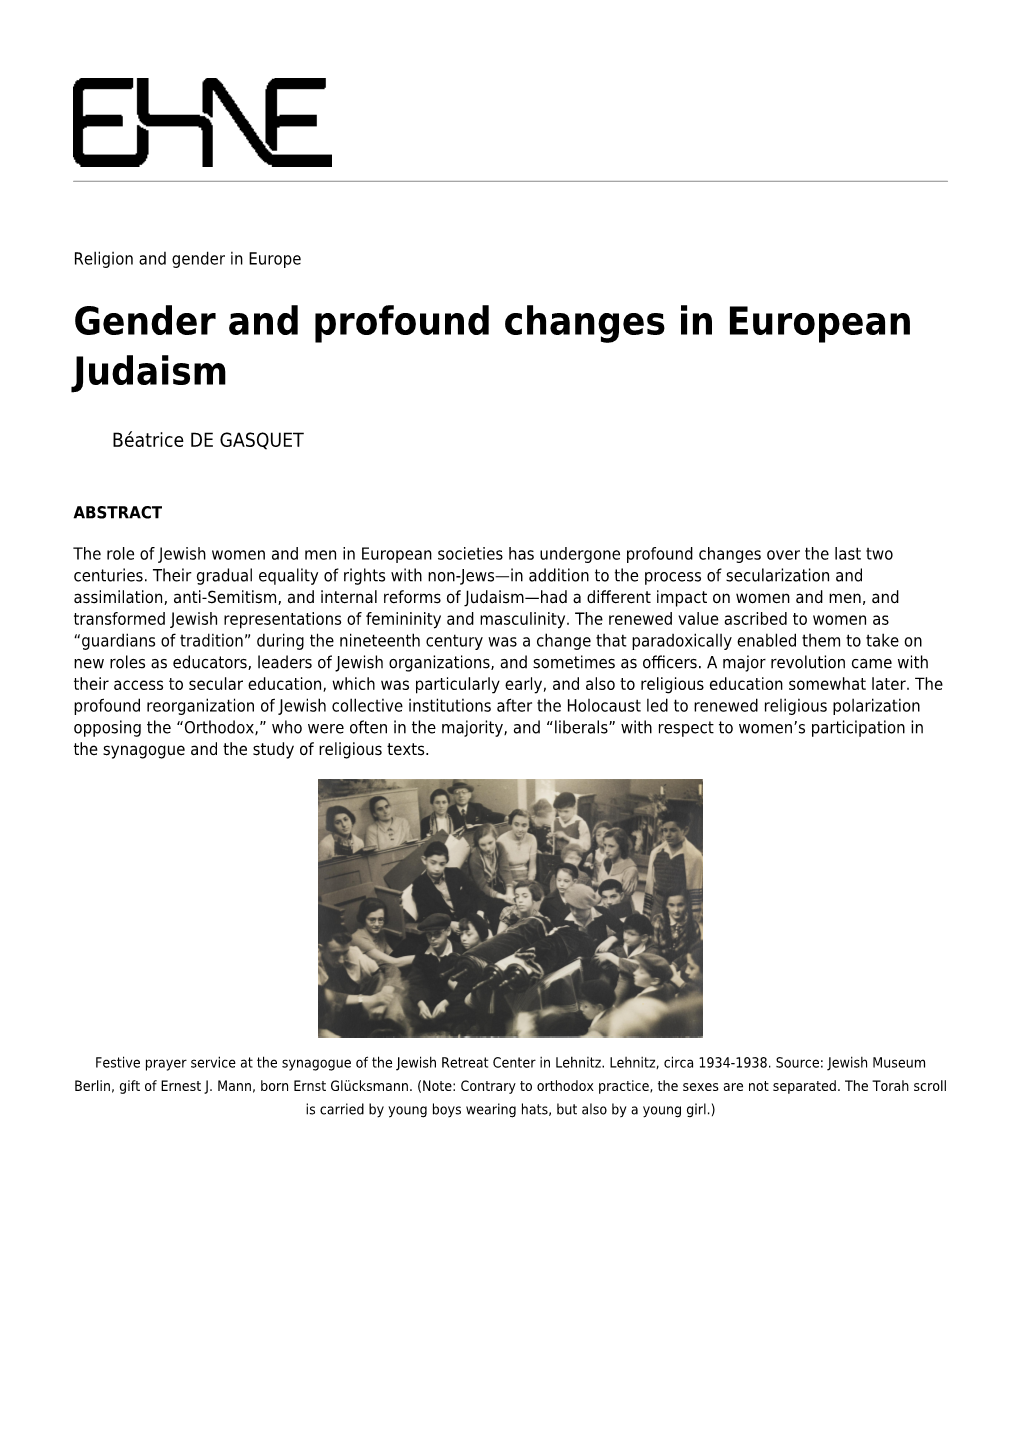 Gender and Profound Changes in European Judaism